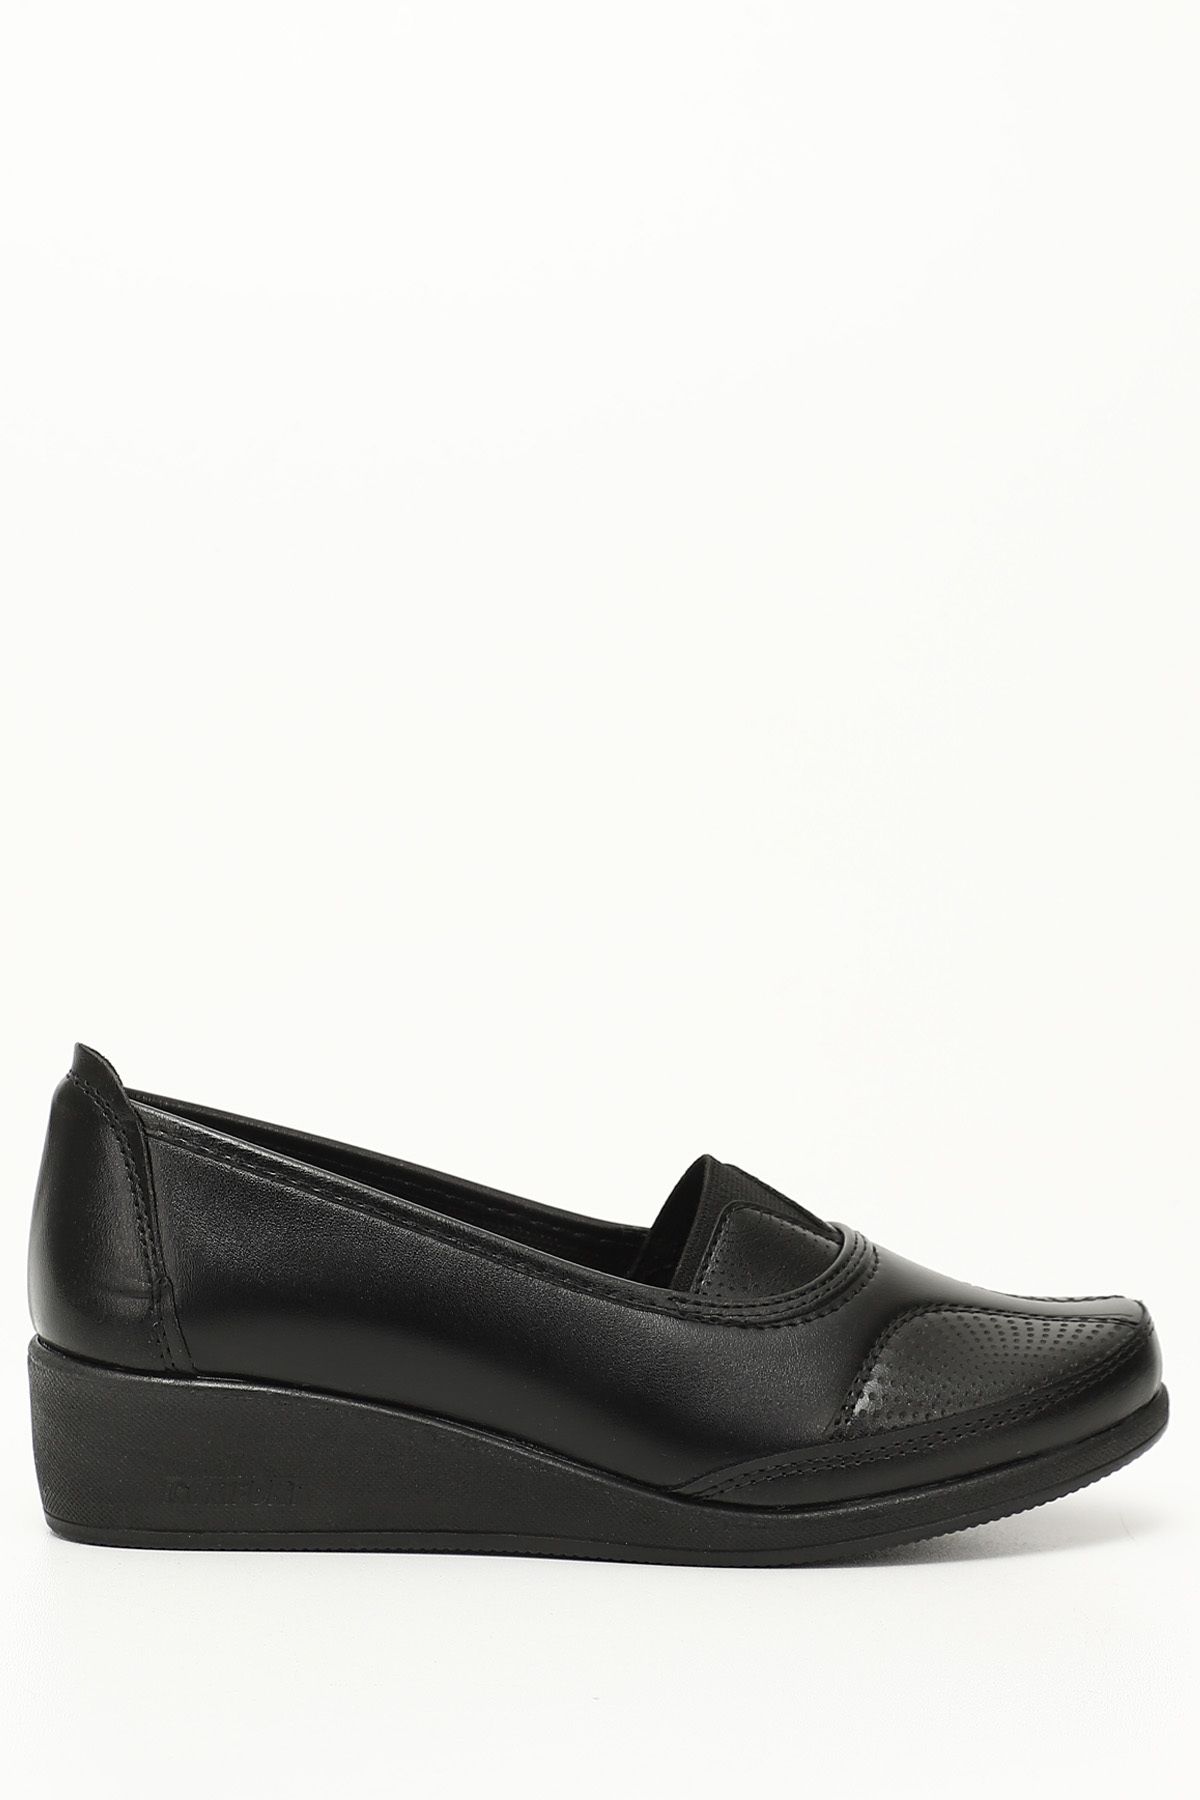 GÖNDERİ(R) Siyah Gön Yuvarlak Burun Dolgu Taban Kadın Günlük Ayakkabı 42080